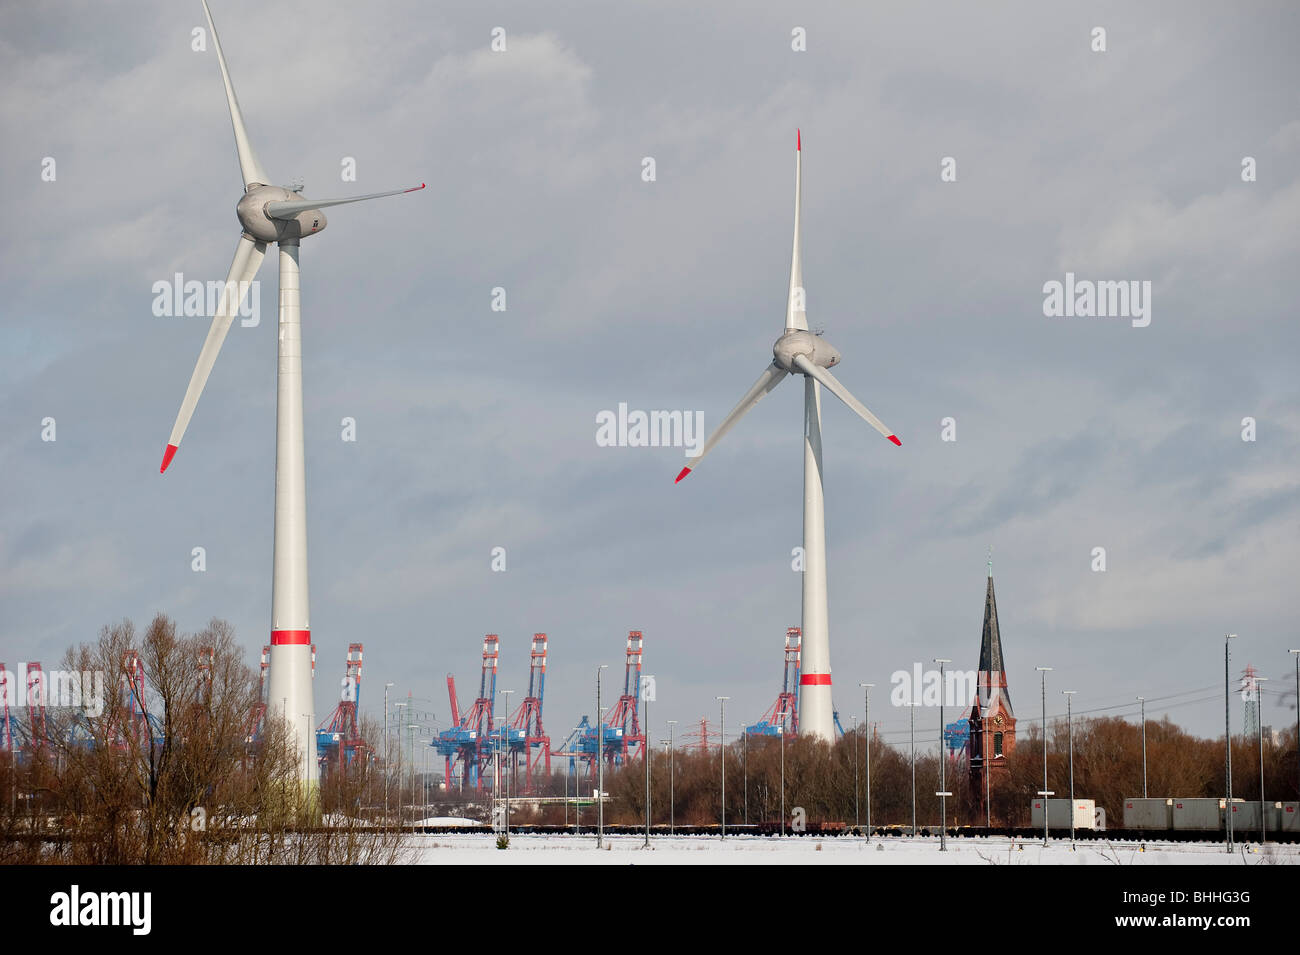 Allemagne Hambourg, moulin d'Enercon E-126 avec 6 MW à Altenwerder pendant l'hiver, le CTA et l'église de terminaux à conteneurs Altenwerder Banque D'Images